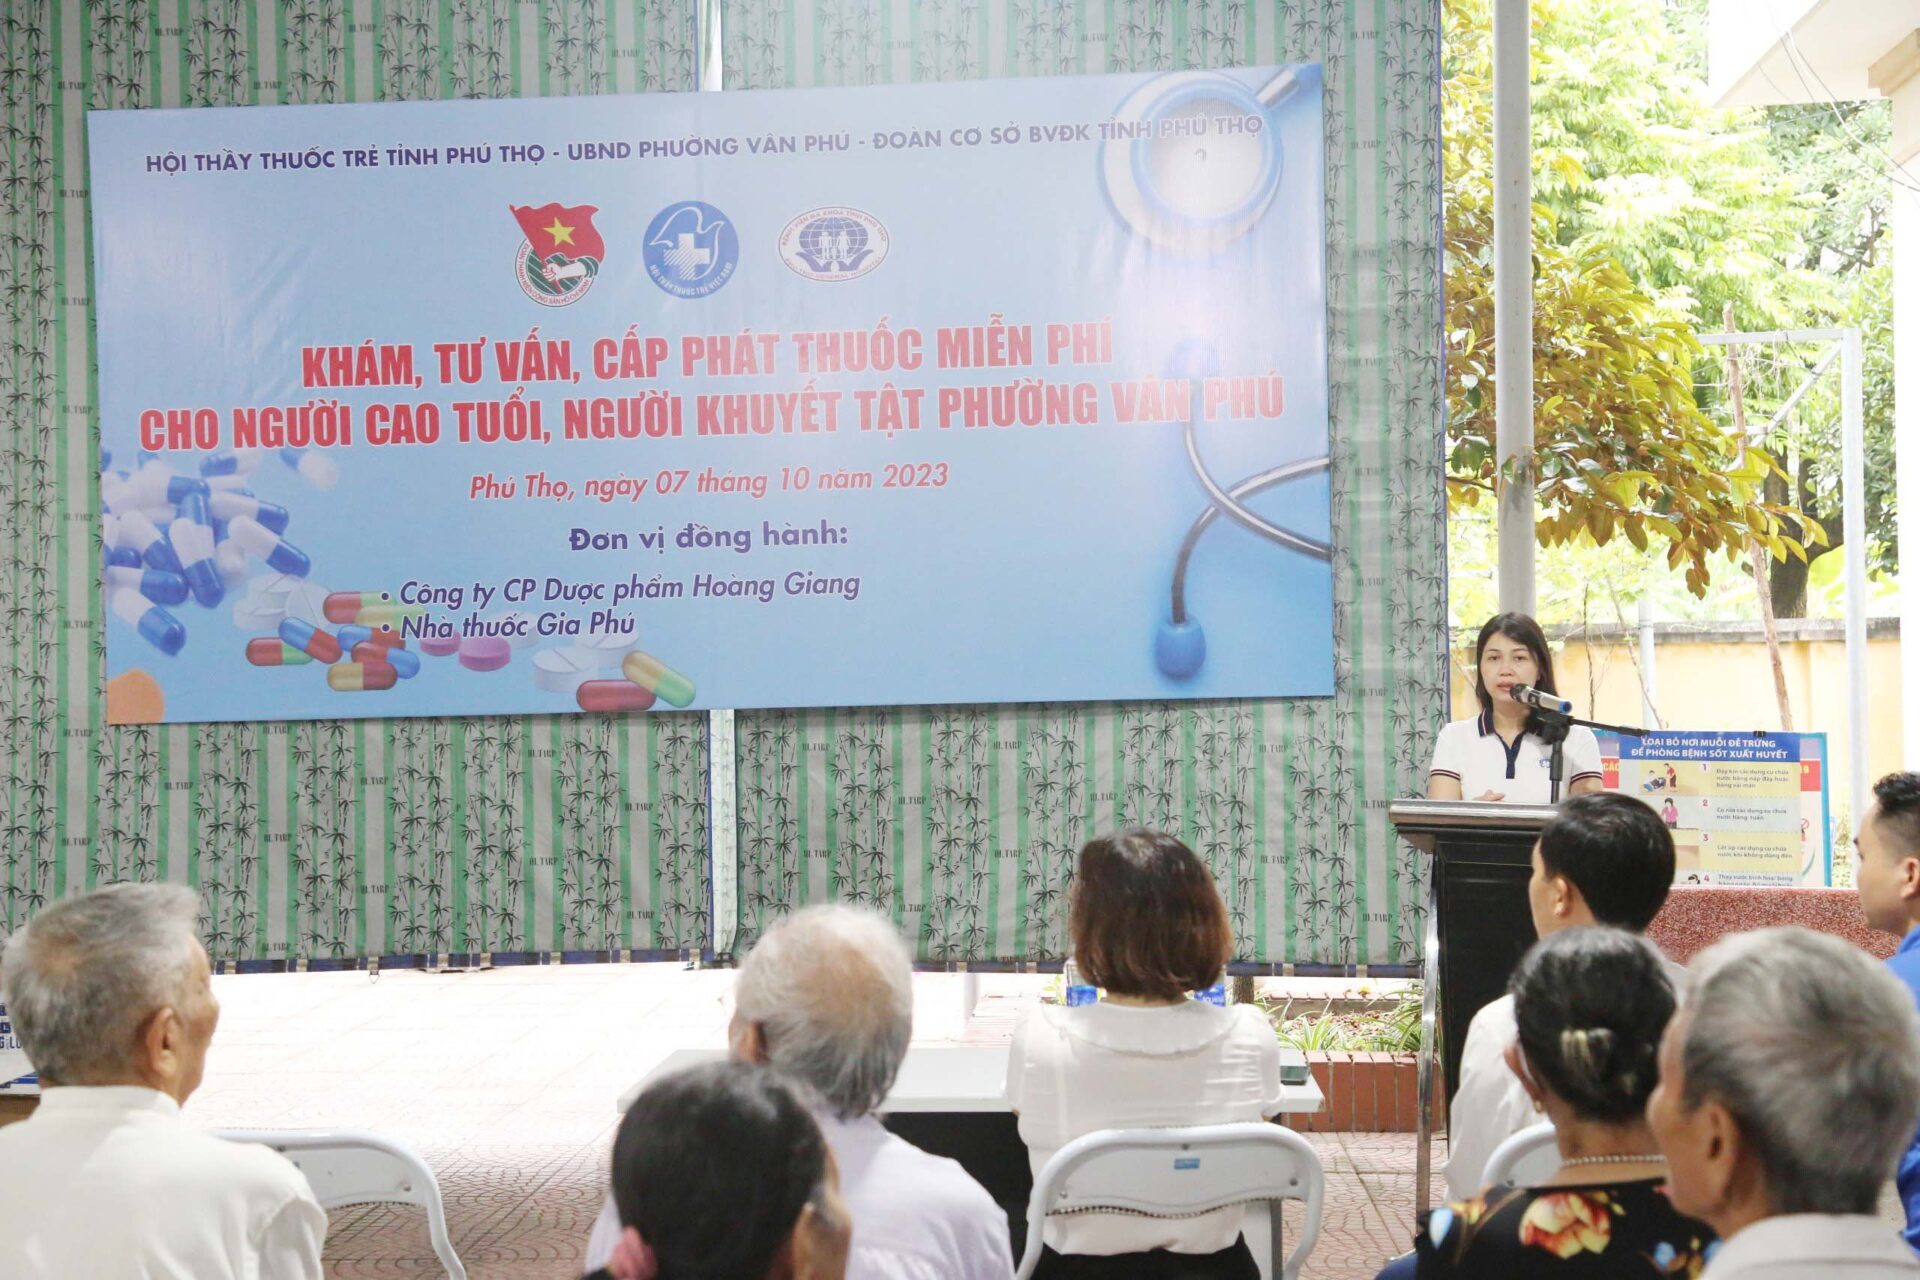 BS CKII Lê Na – Phó giám đốc Bệnh viện đa khoa tỉnh Phú Thọ, Uỷ viên BCH Hội thầy thuốc trẻ tỉnh Phú Thọ phát biểu tại chương trình